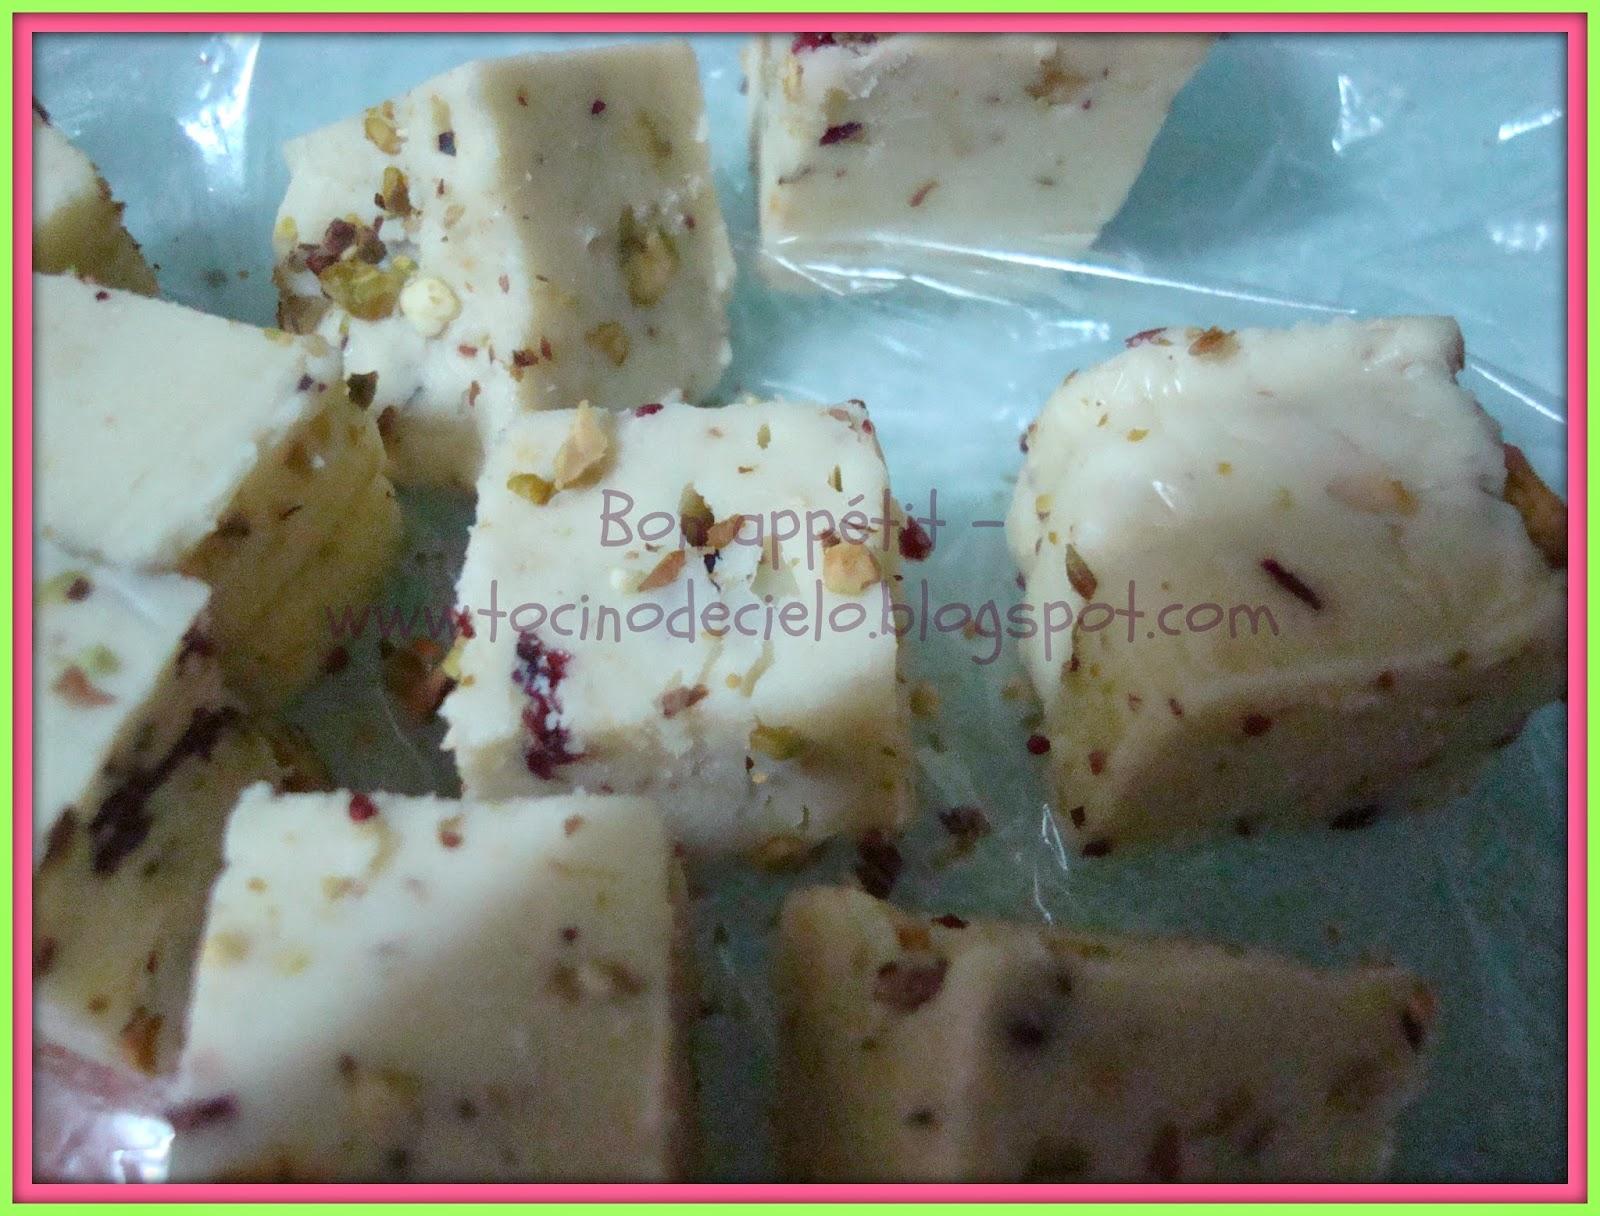 Fudges au chocolat blanc aux pistaches et aux canneberges (Thermomix)  - Fudges de chocolate blanco con pistachos y arandanos (Thermomix)